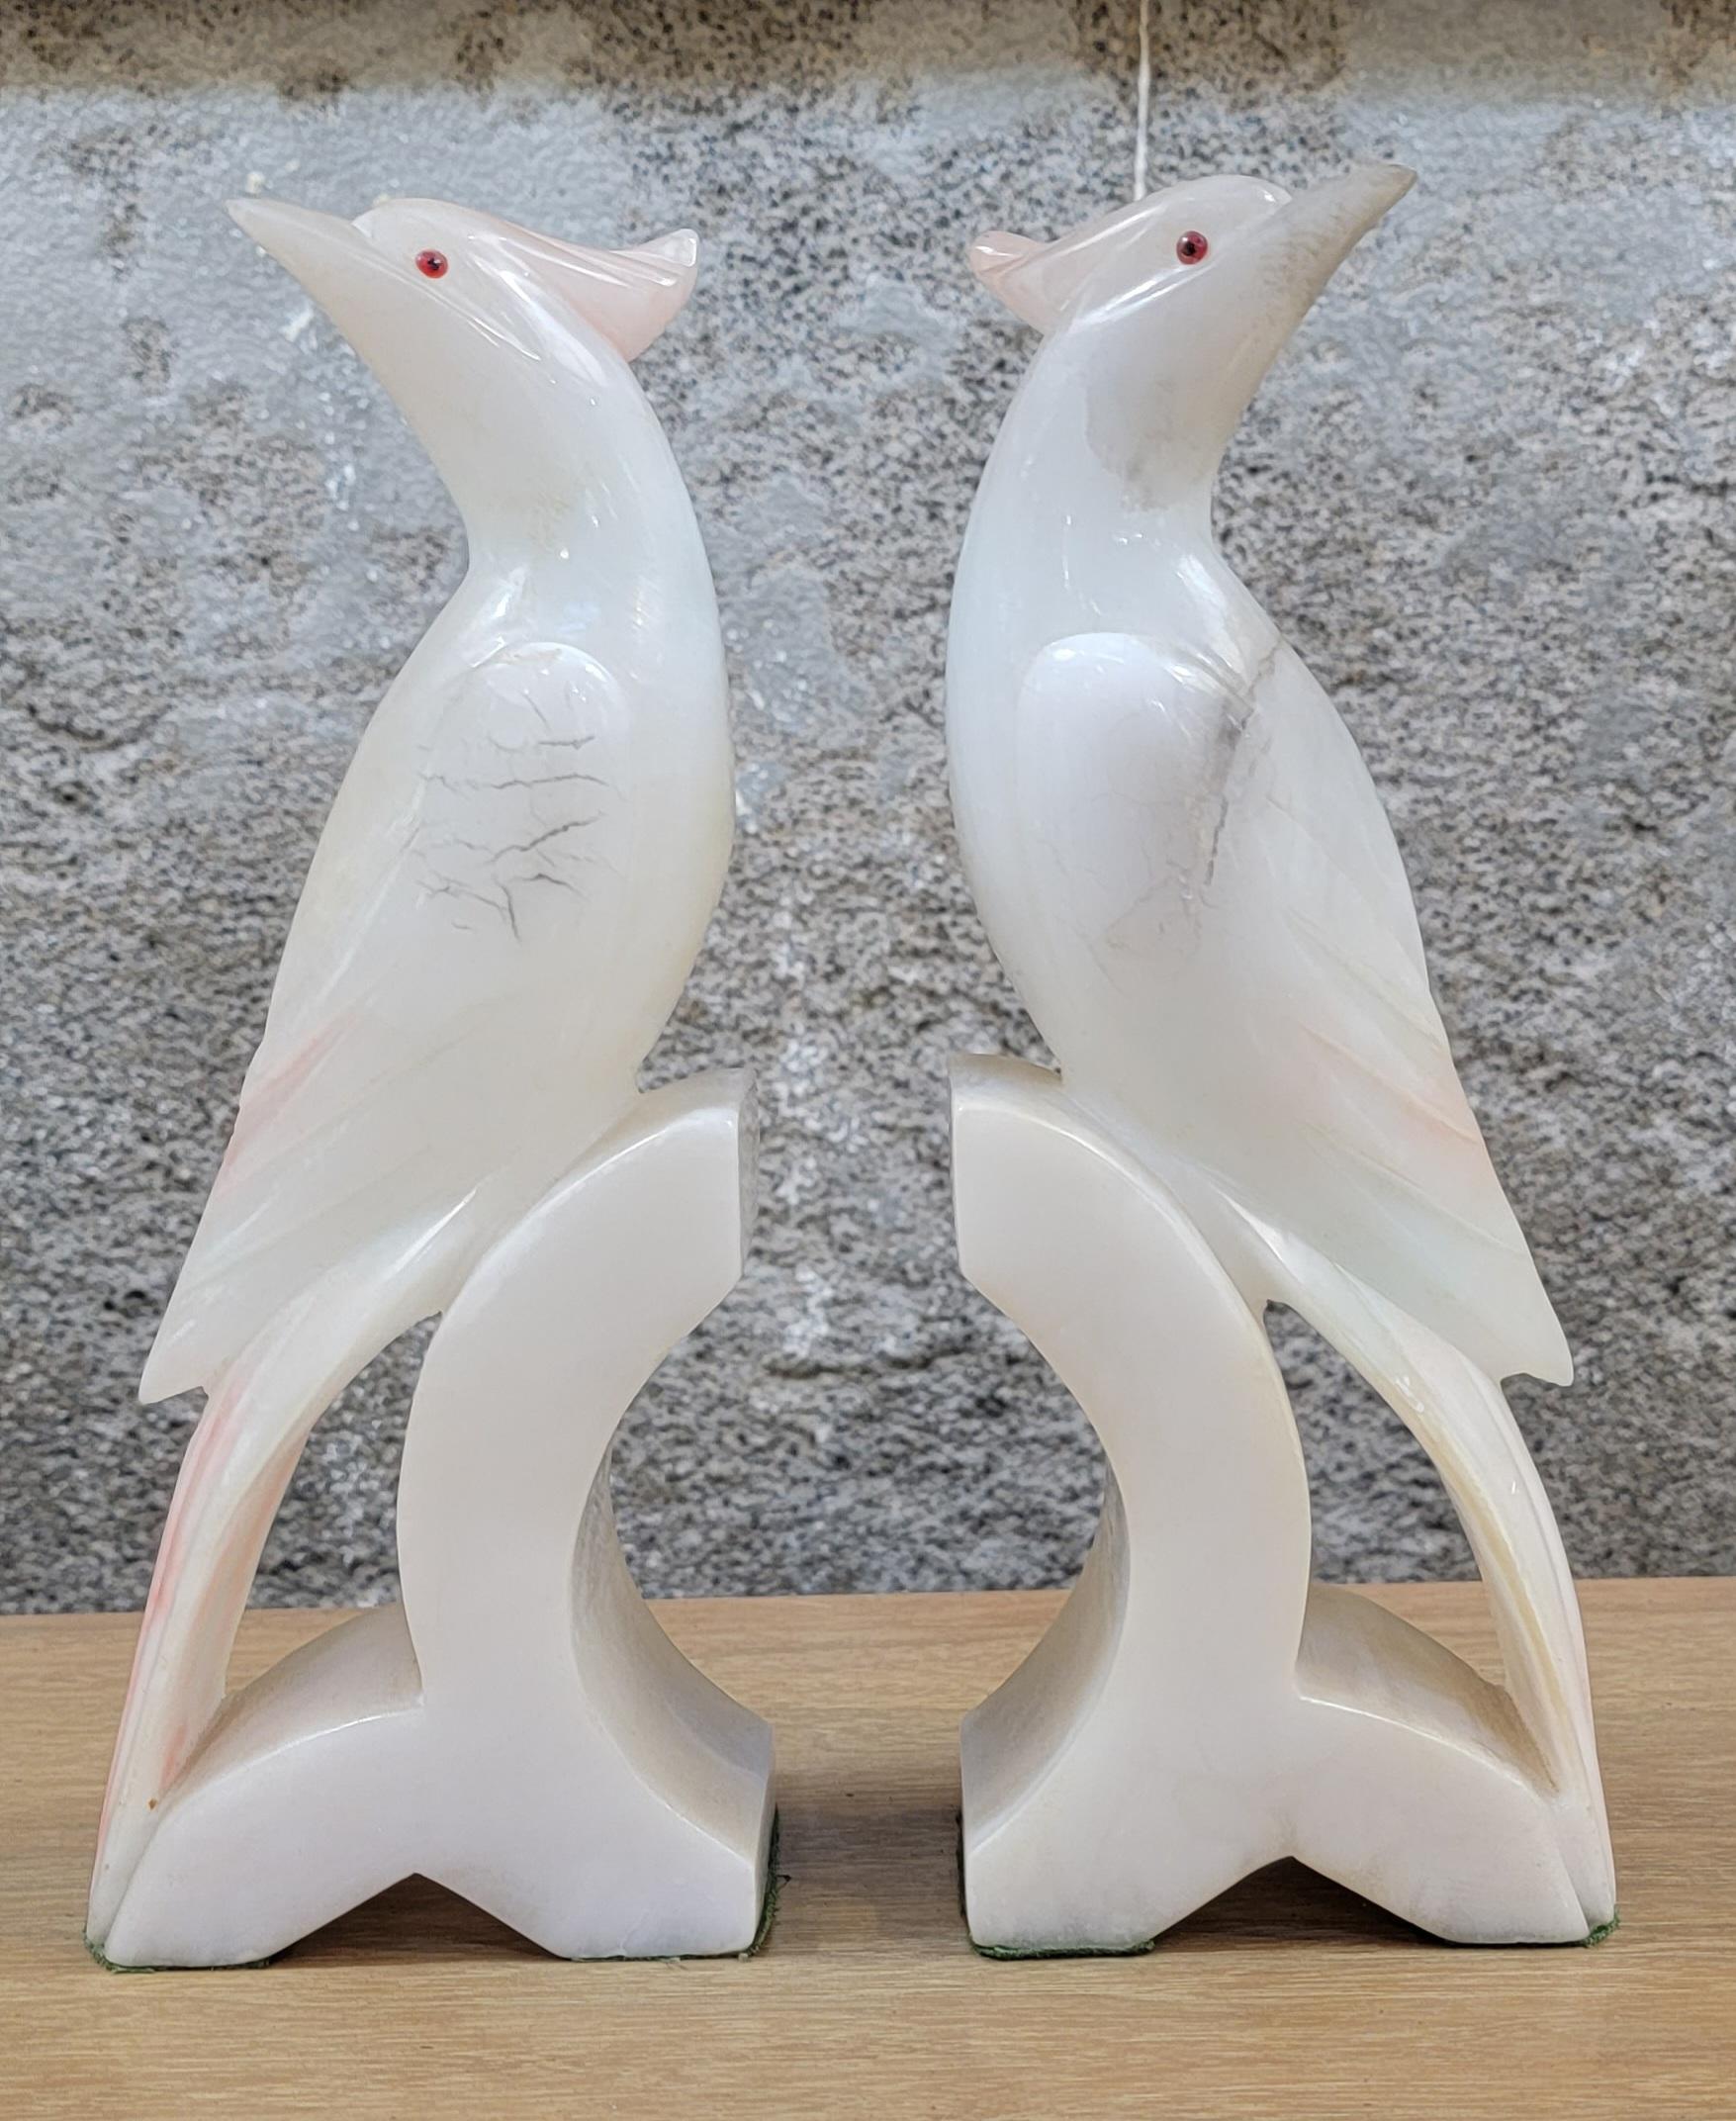 Ein Paar geschnitzte Alabaster Kakadu Vogel Buchstützen. Weiß, schwarz und rosa marmorierter Alabaster. Jede Buchstütze ist 9,5 Zoll hoch, 3,75 Zoll breit und 2,25 Zoll tief.